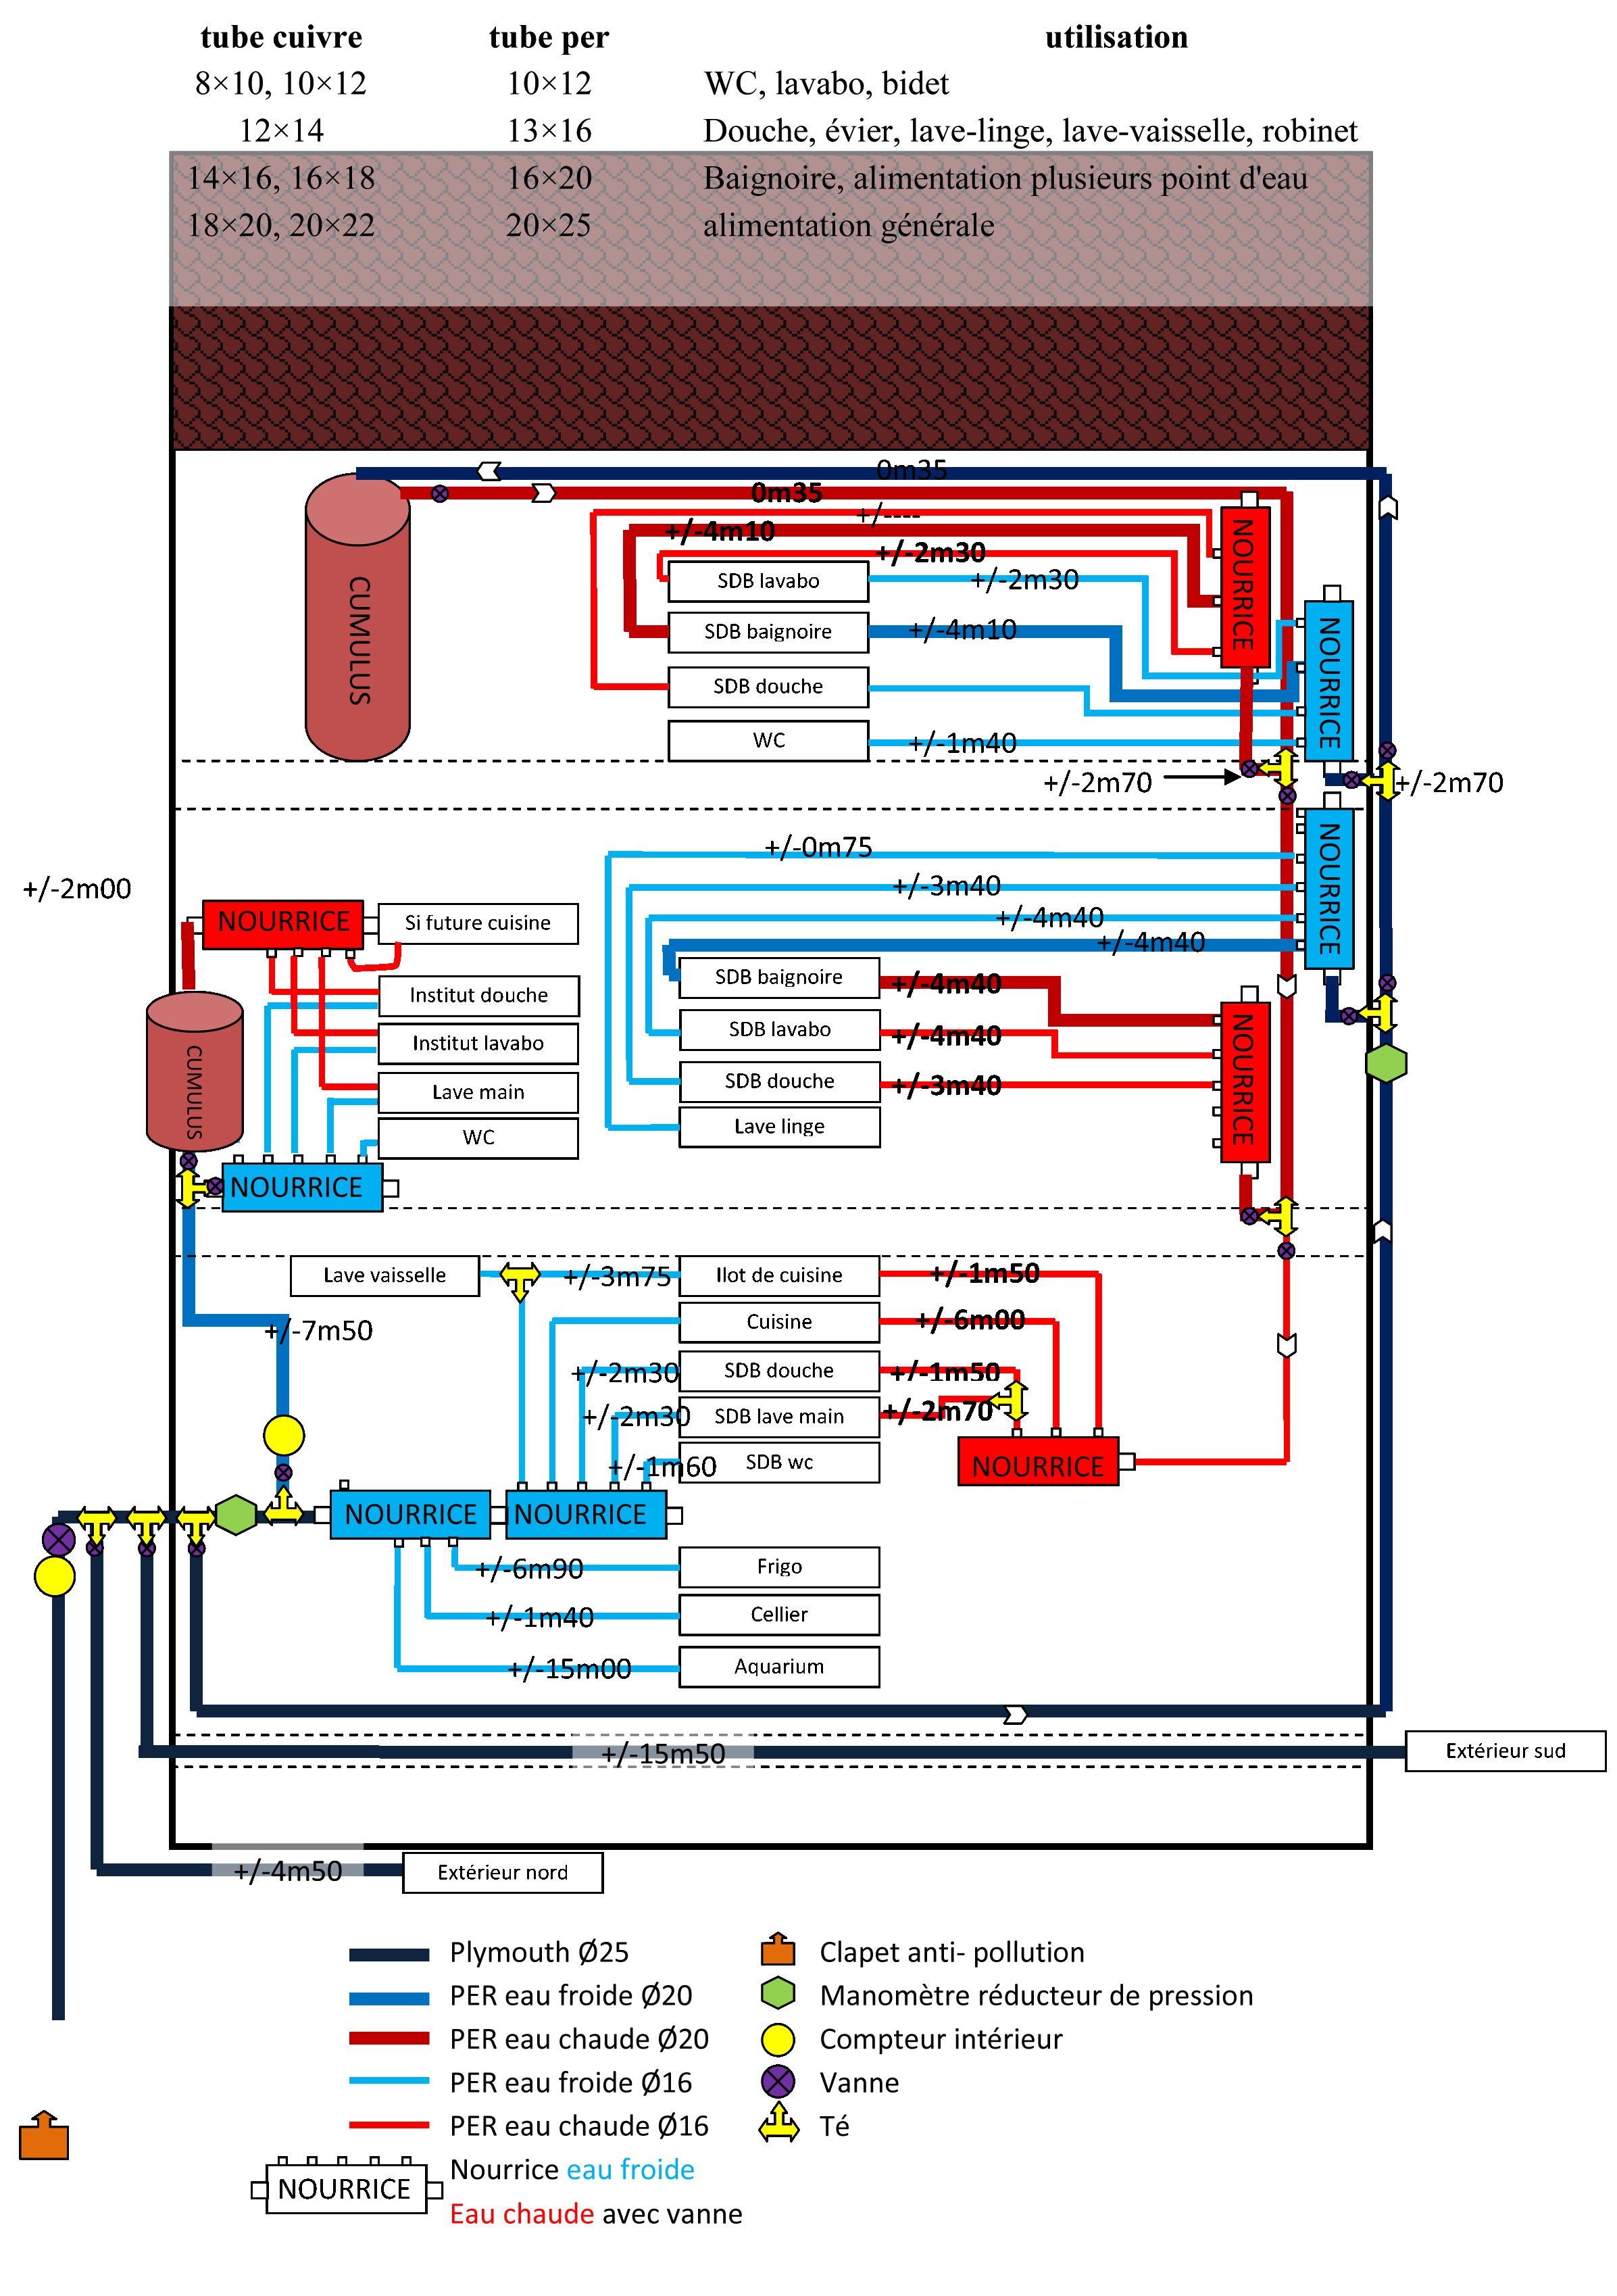 https://plombiers-reunis.com/Host/images/1269018029-copie-schema-circuit-deau-essai.gif